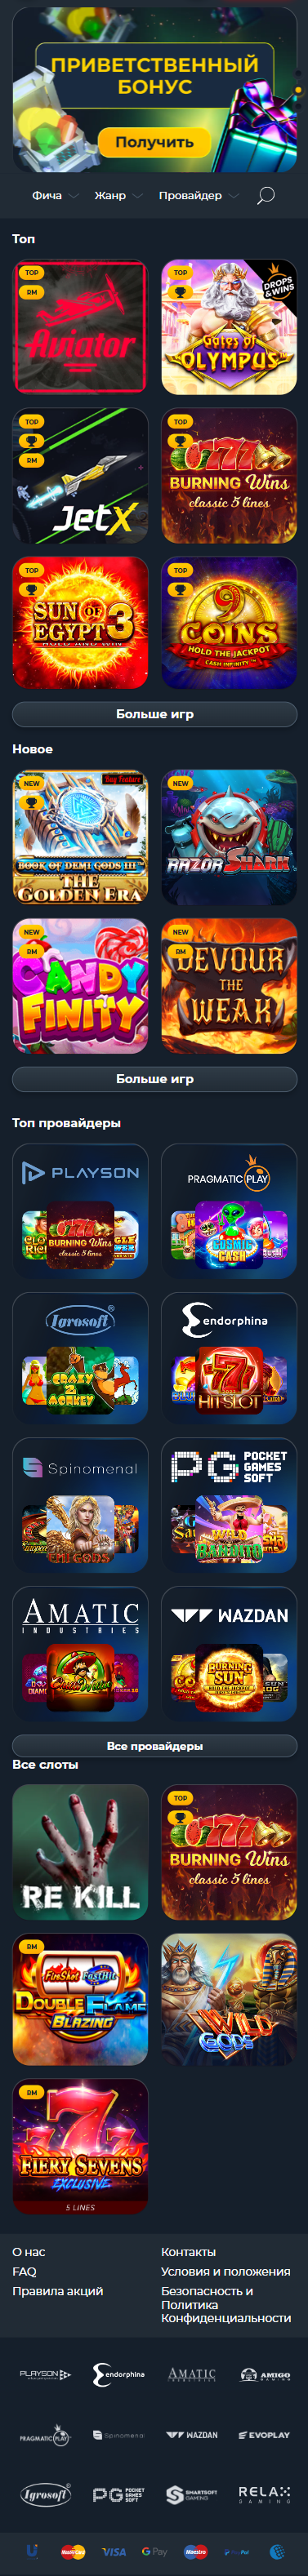 Vivi Casino - Волнующий мир азарта и увлекательных игр